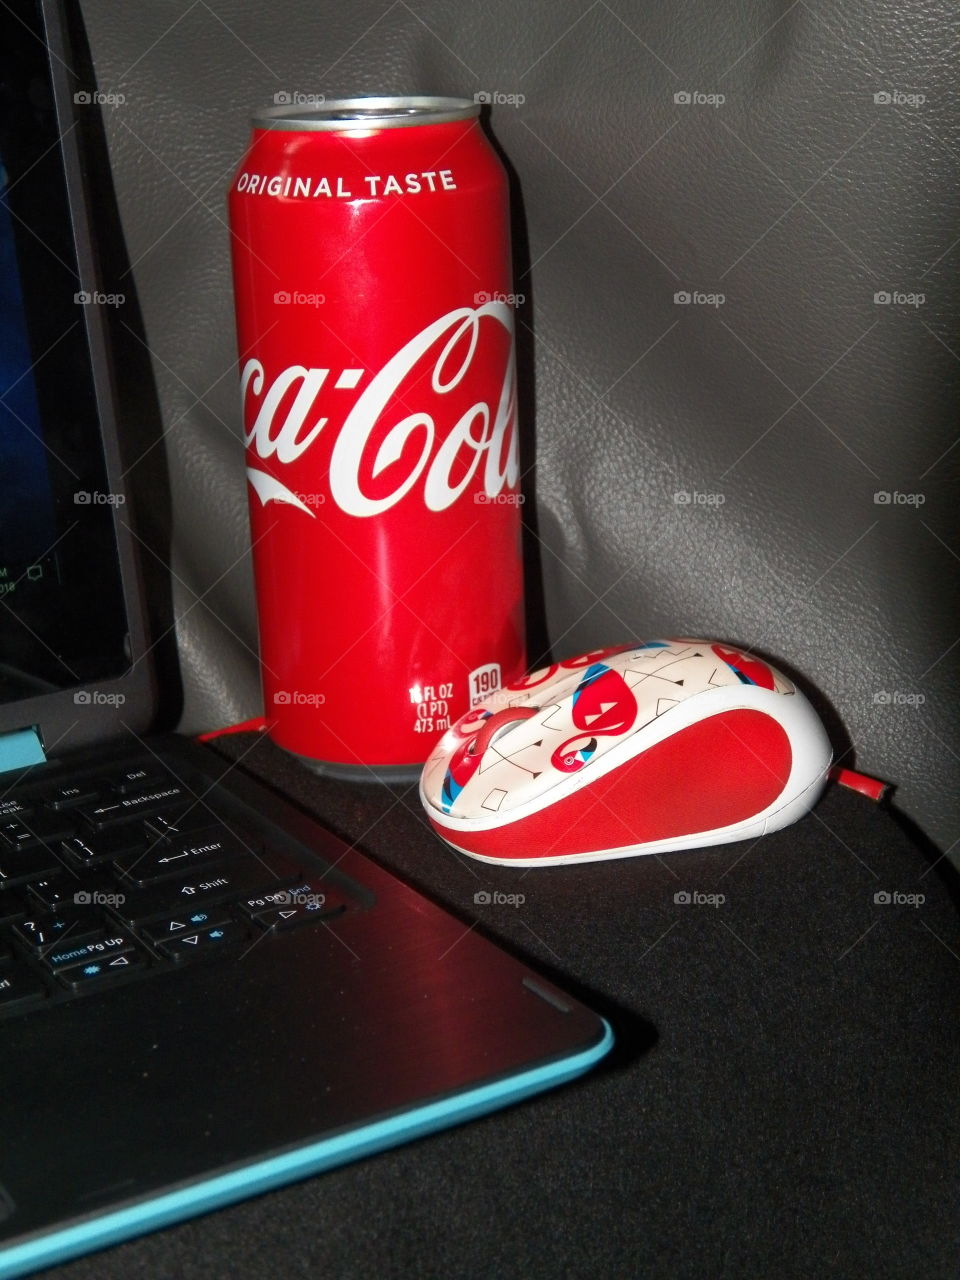 Coka-cola and time to edit